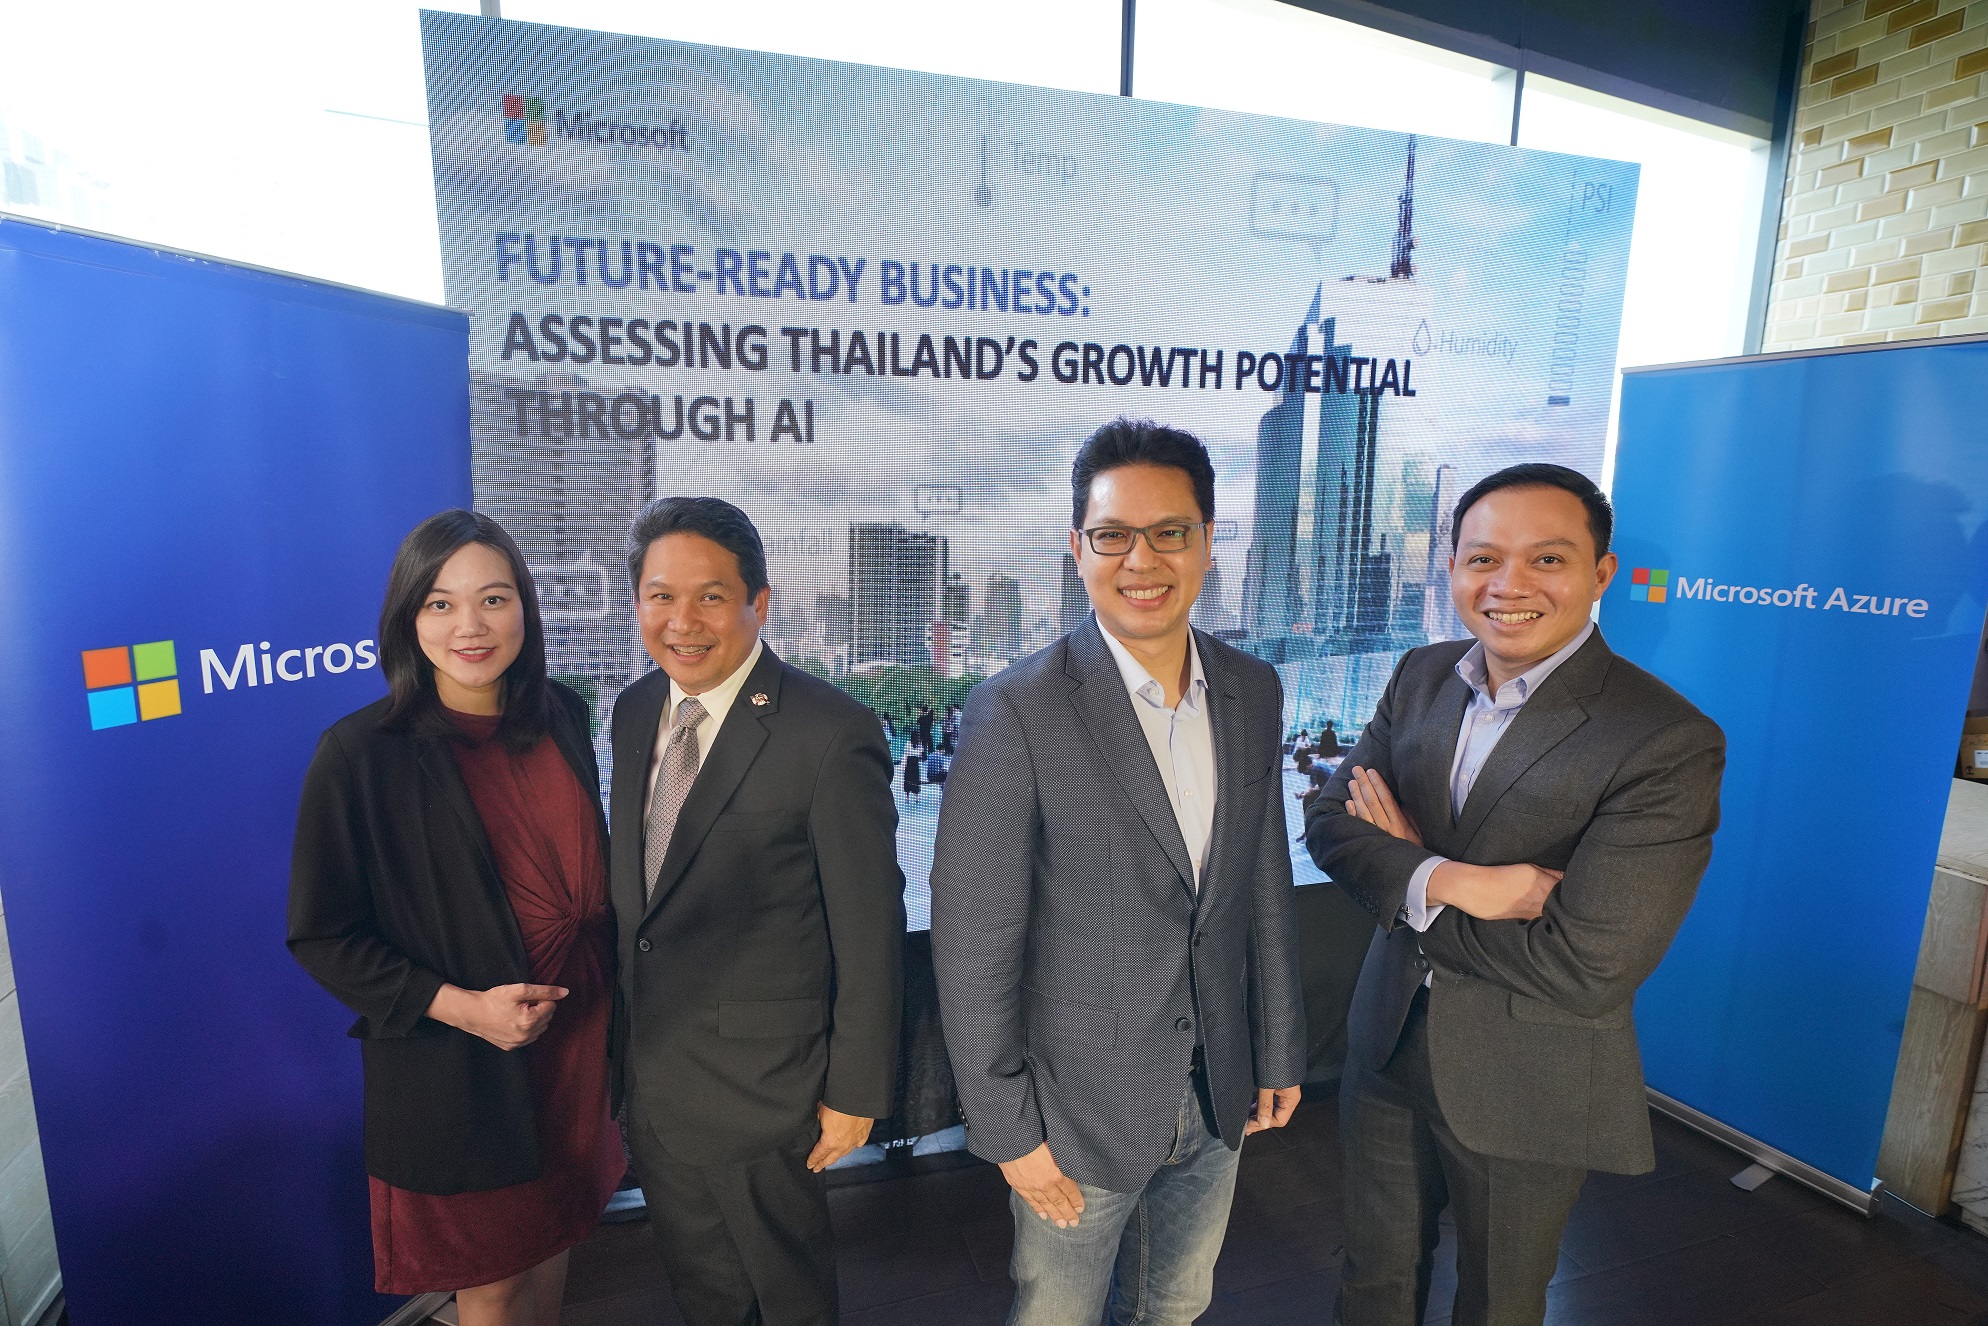 ไมโครซอฟท์ผลักดันภาคธุรกิจไทย หนุนให้นำ AI เข้าไปอยู่ในกลยุทธ์หลัก